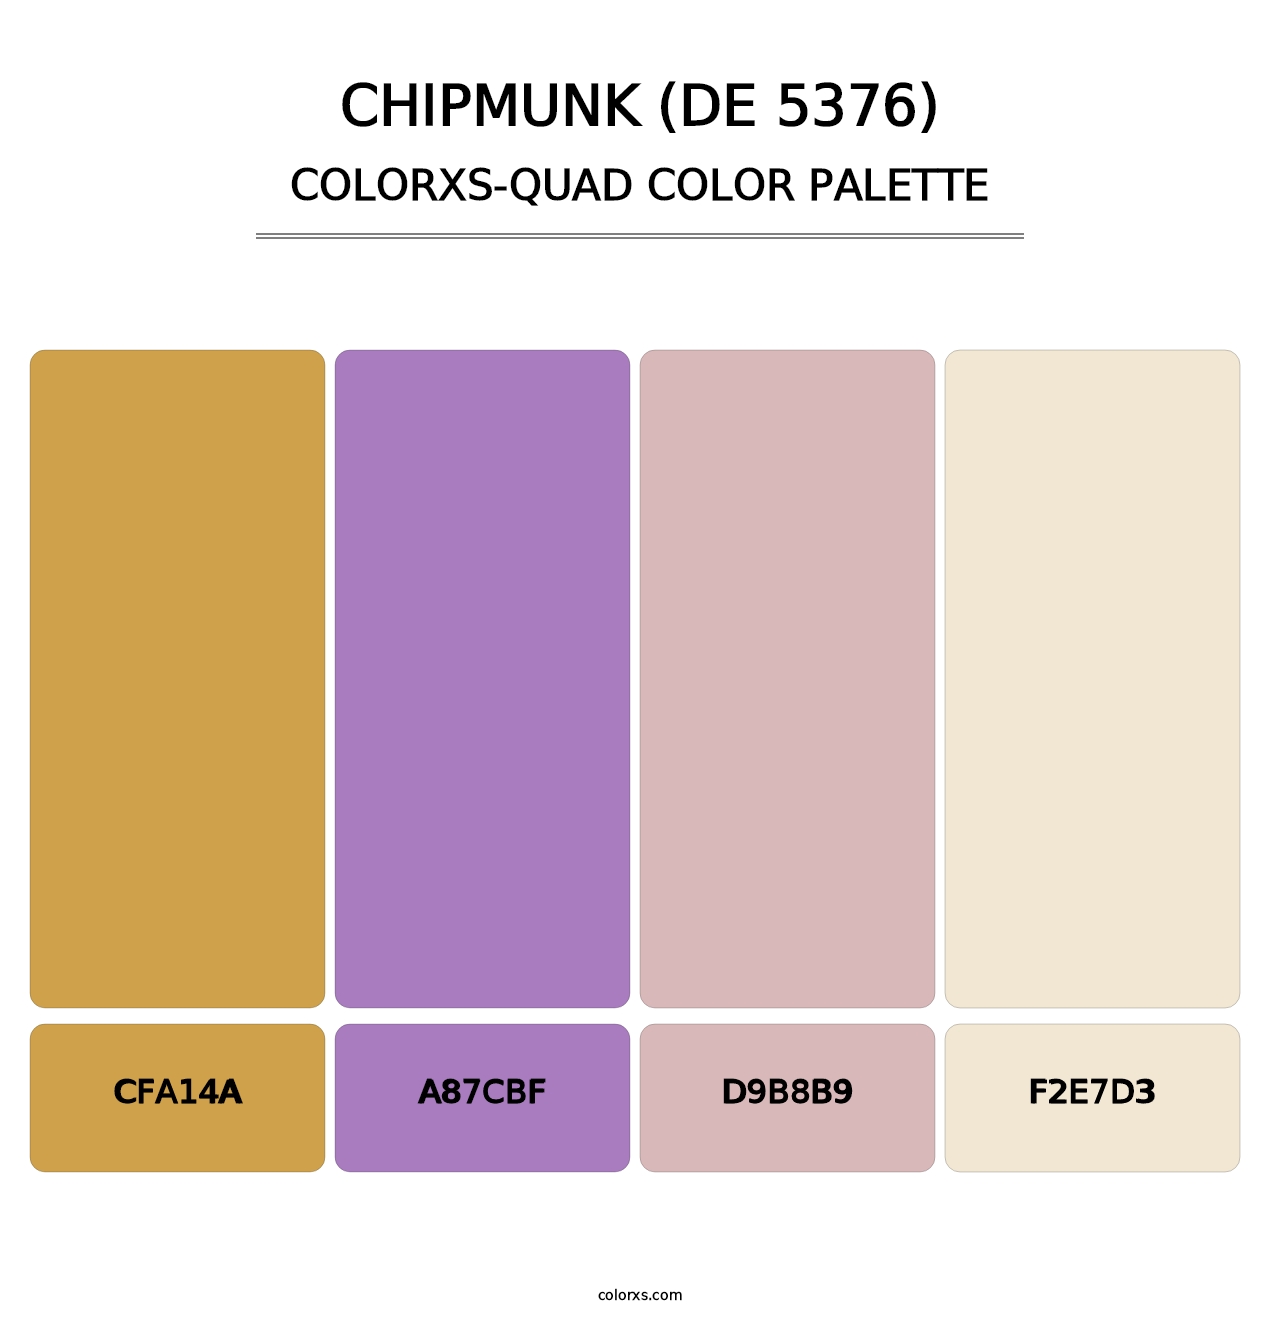 Chipmunk (DE 5376) - Colorxs Quad Palette